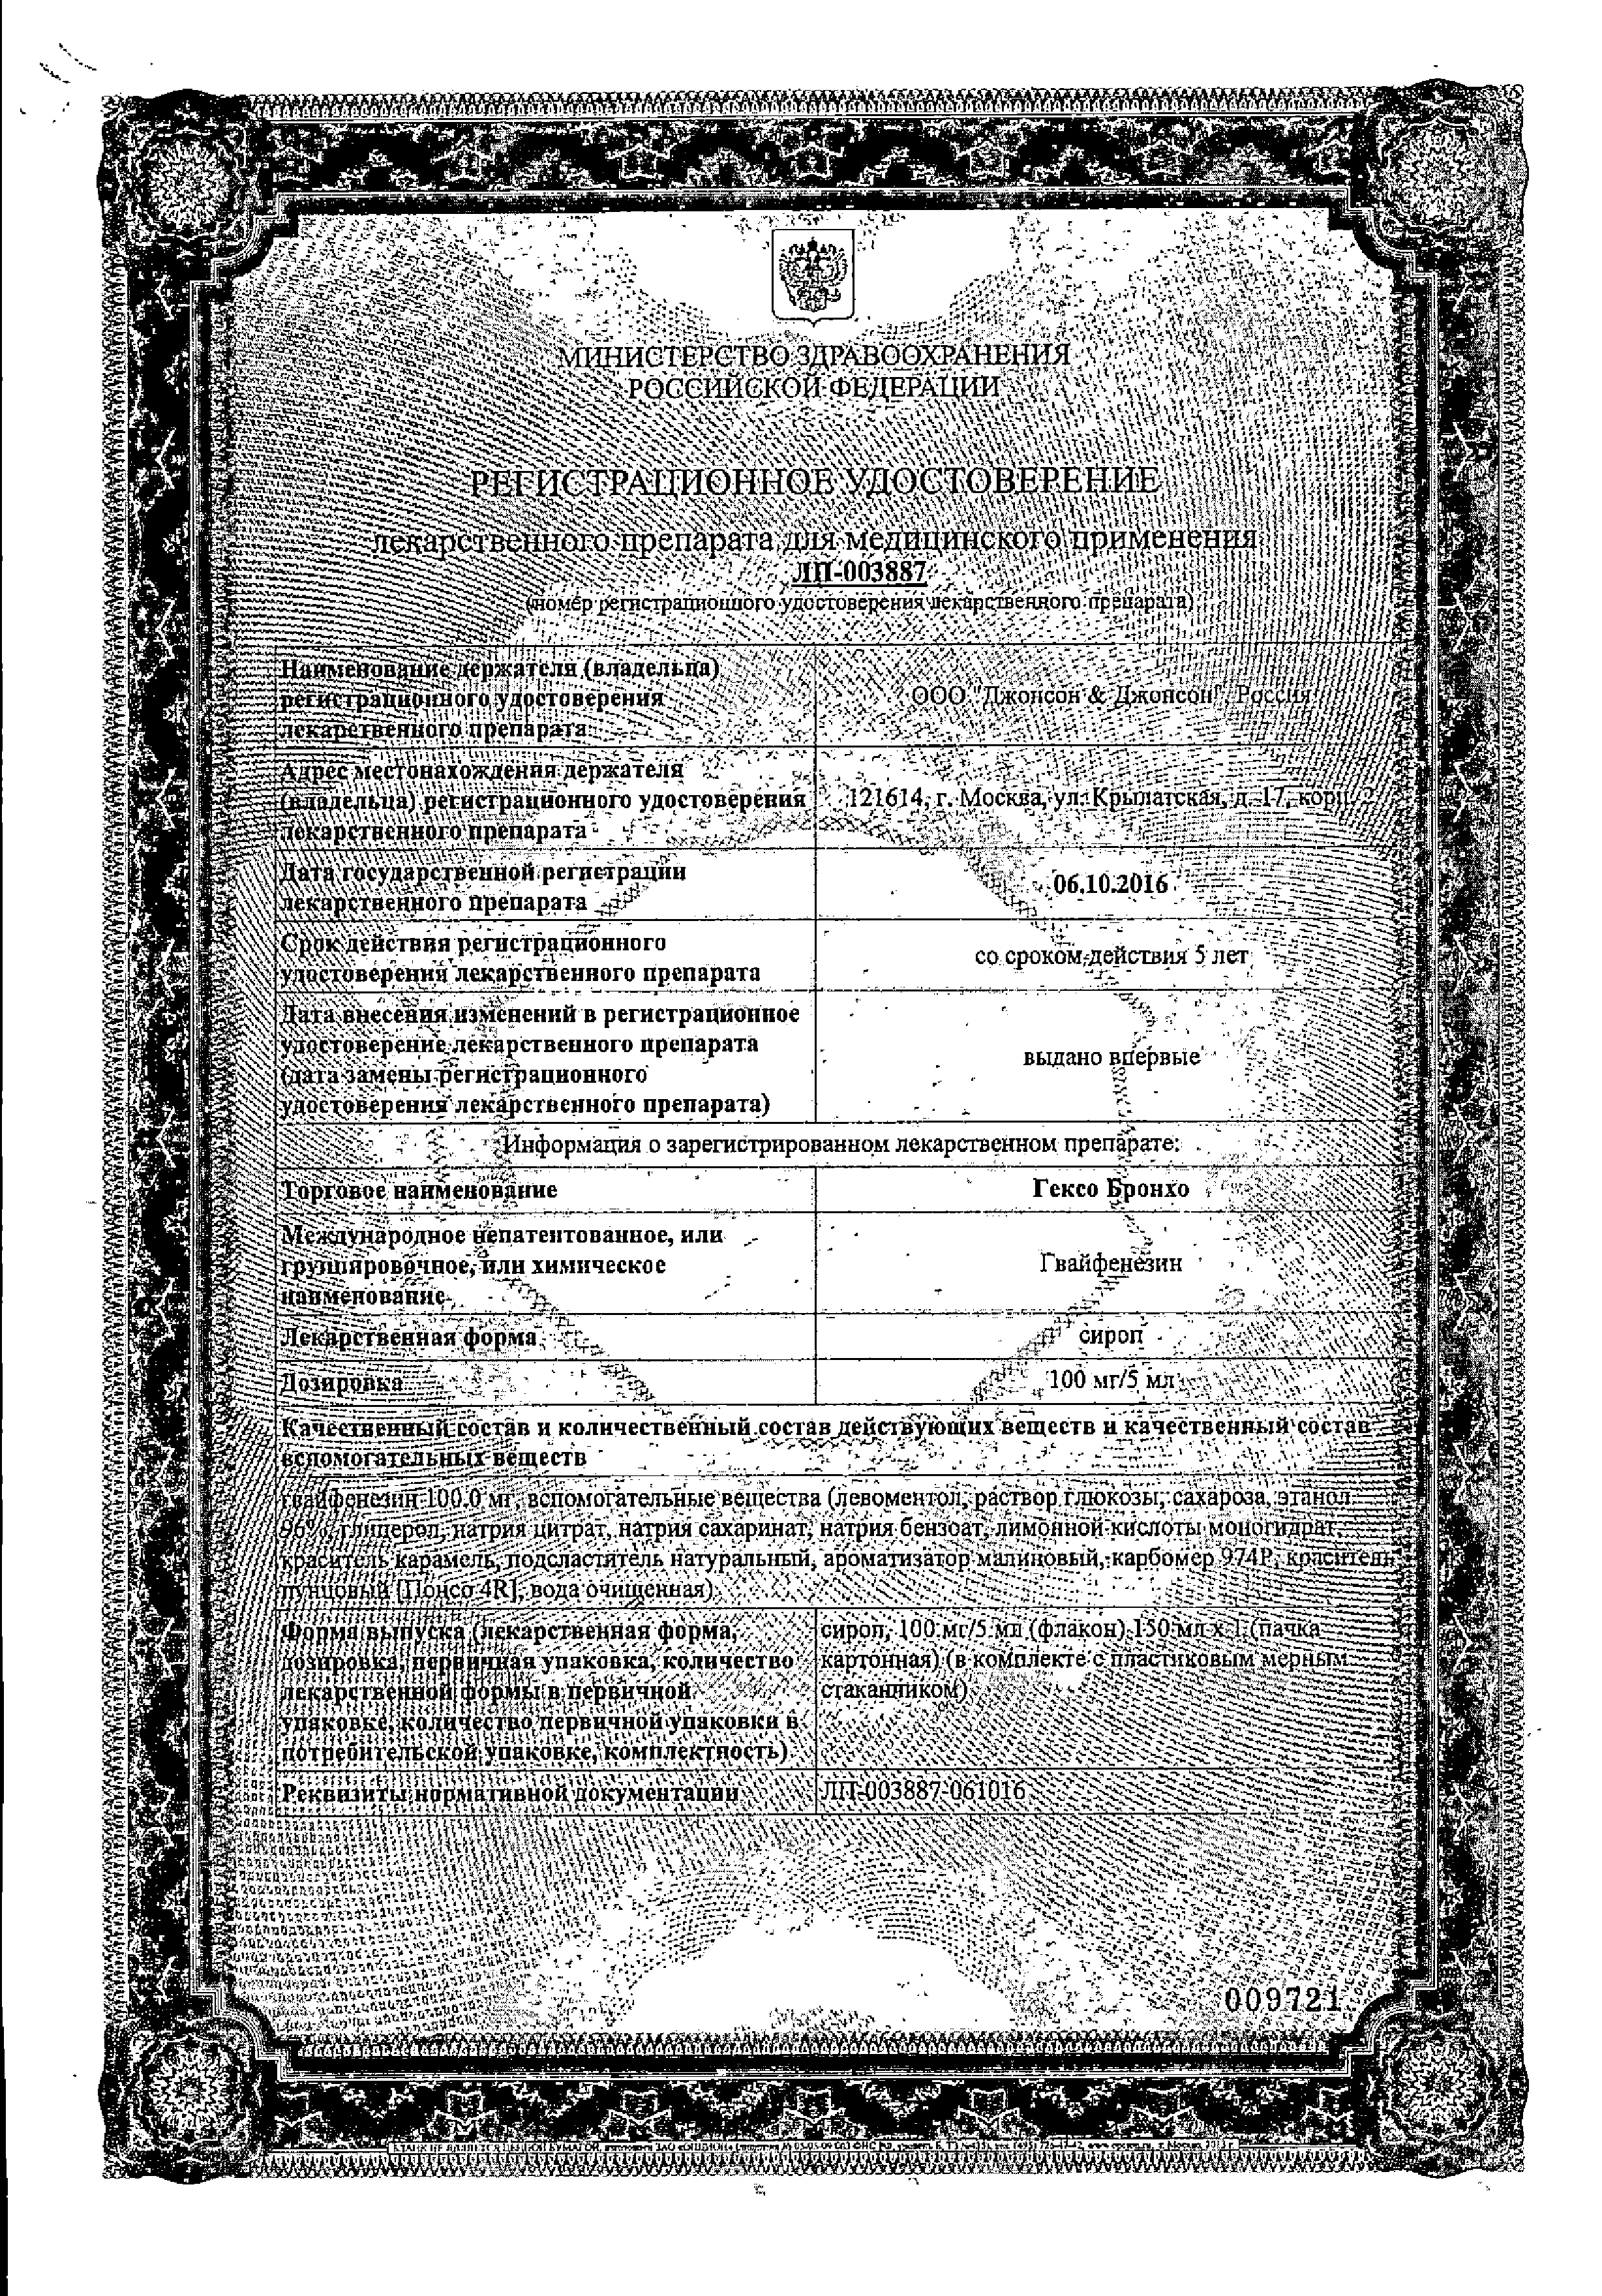 Гексо Бронхо сертификат